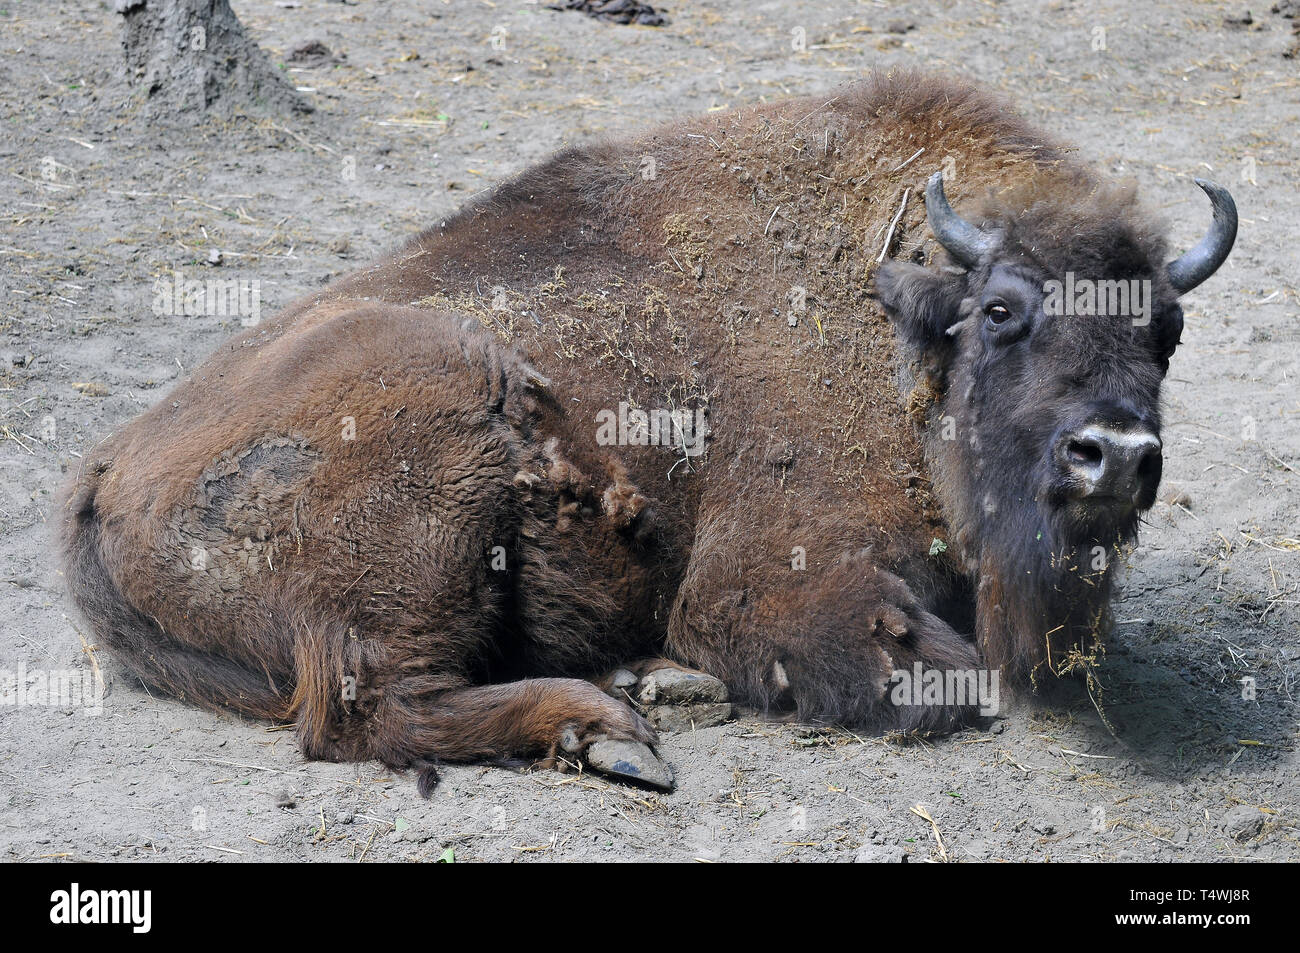 European bison, wisent, Europäische Bison, európai bölény, Bison bonasus Stock Photo